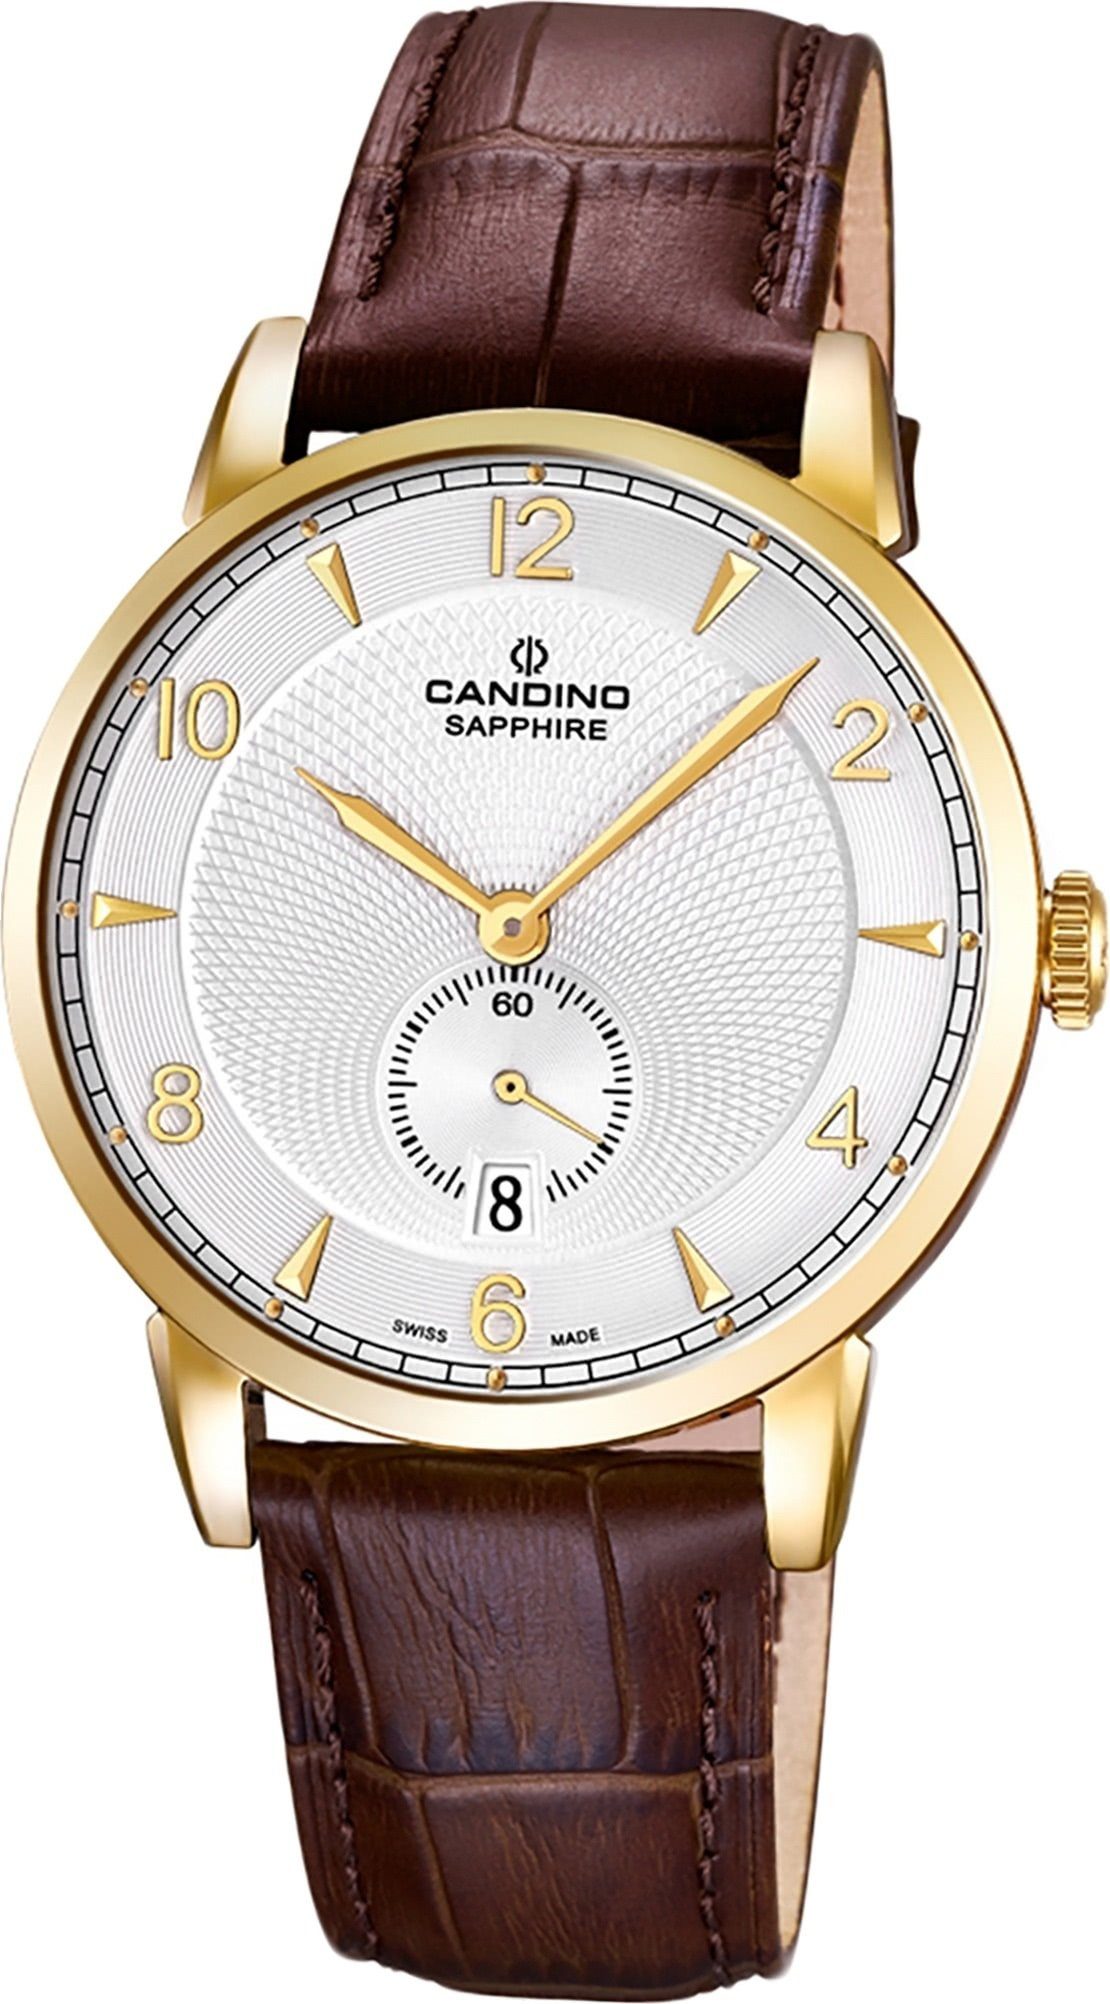 Herren Uhren Candino Quarzuhr D2UC4592/2 Candino Classic Leder Quarz Herren Uhr, Herrenuhr mit Lederarmband, rundes Gehäuse, gro